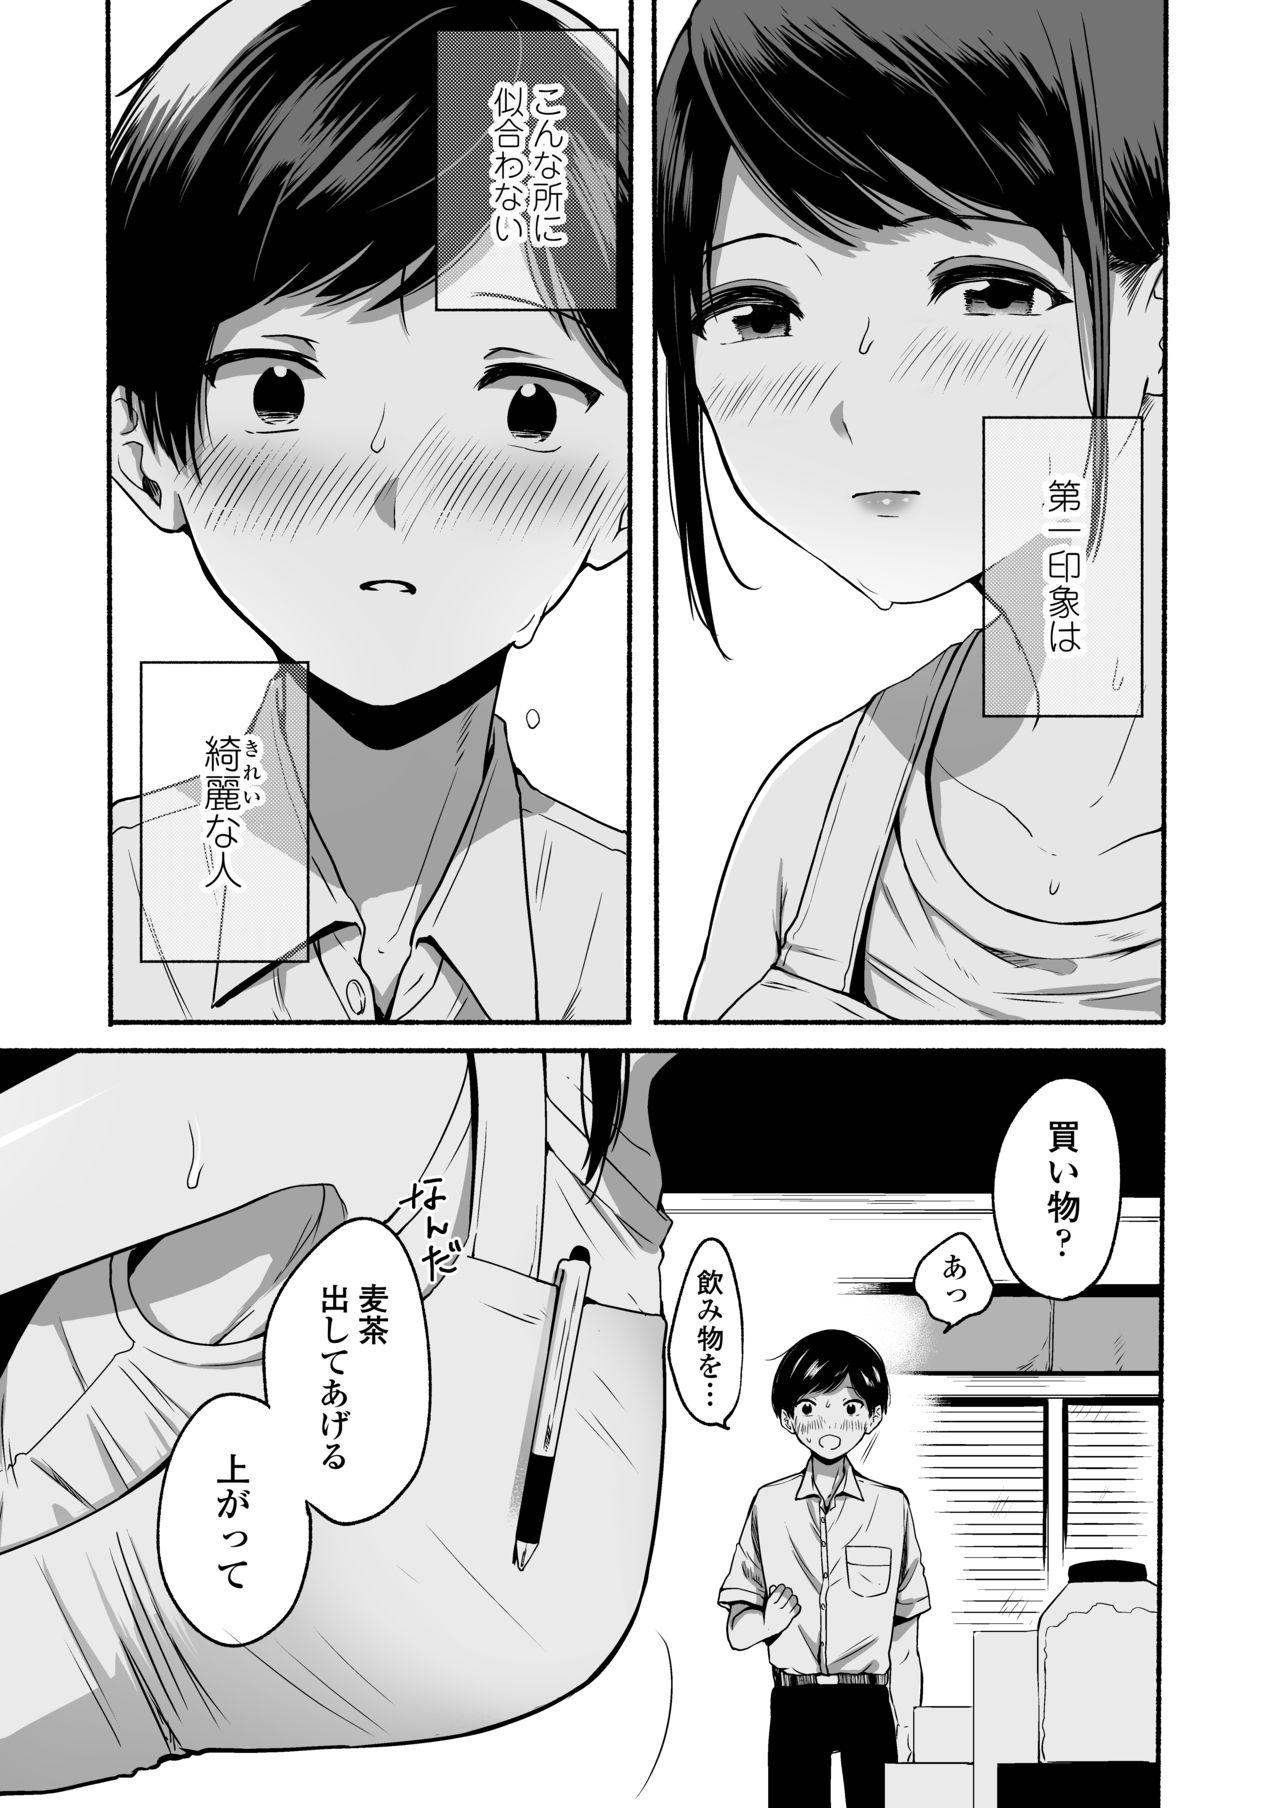 Adorable Boku to Natsu no Himitsu Girls - Page 4